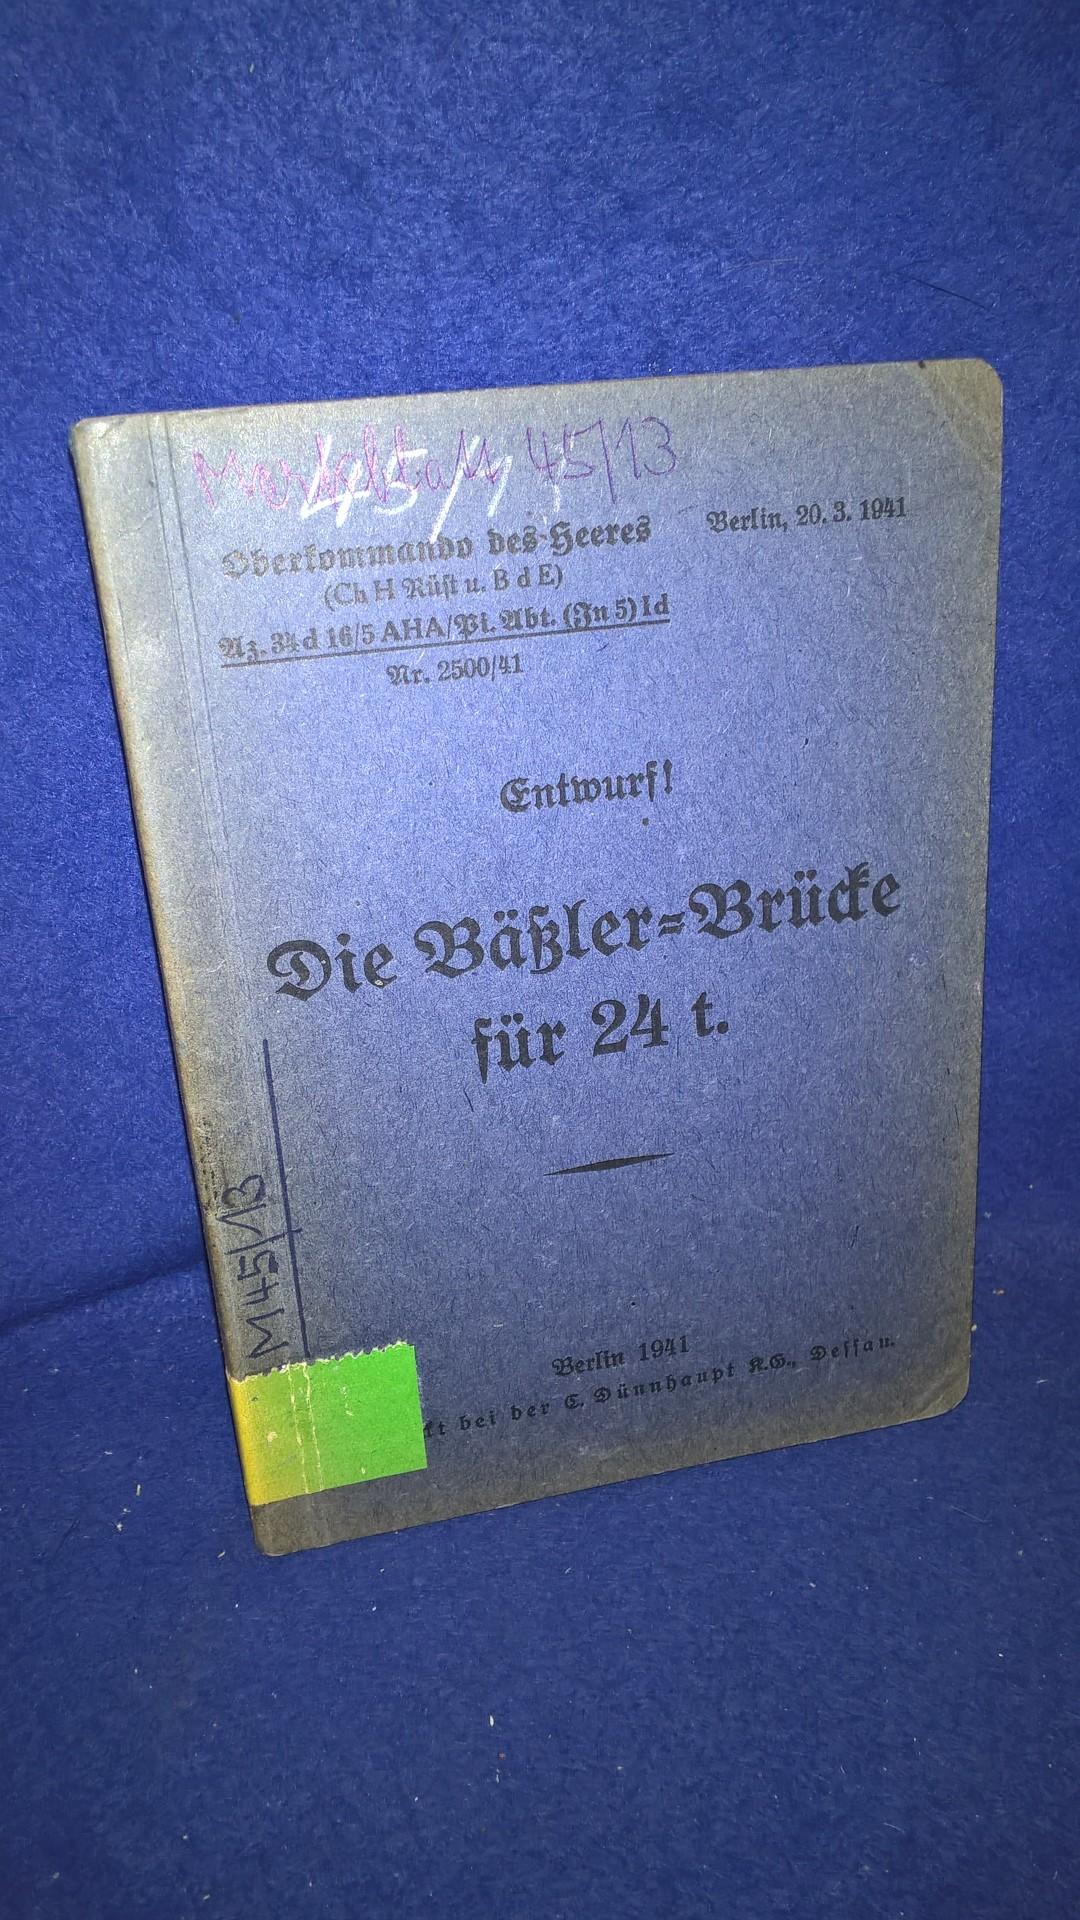 Oberkommando des Heeres. (Chef. H.-Rüst.). Merkblatt 45/13. Die Bäßler-Brücke für 24 t. Vom 1941.